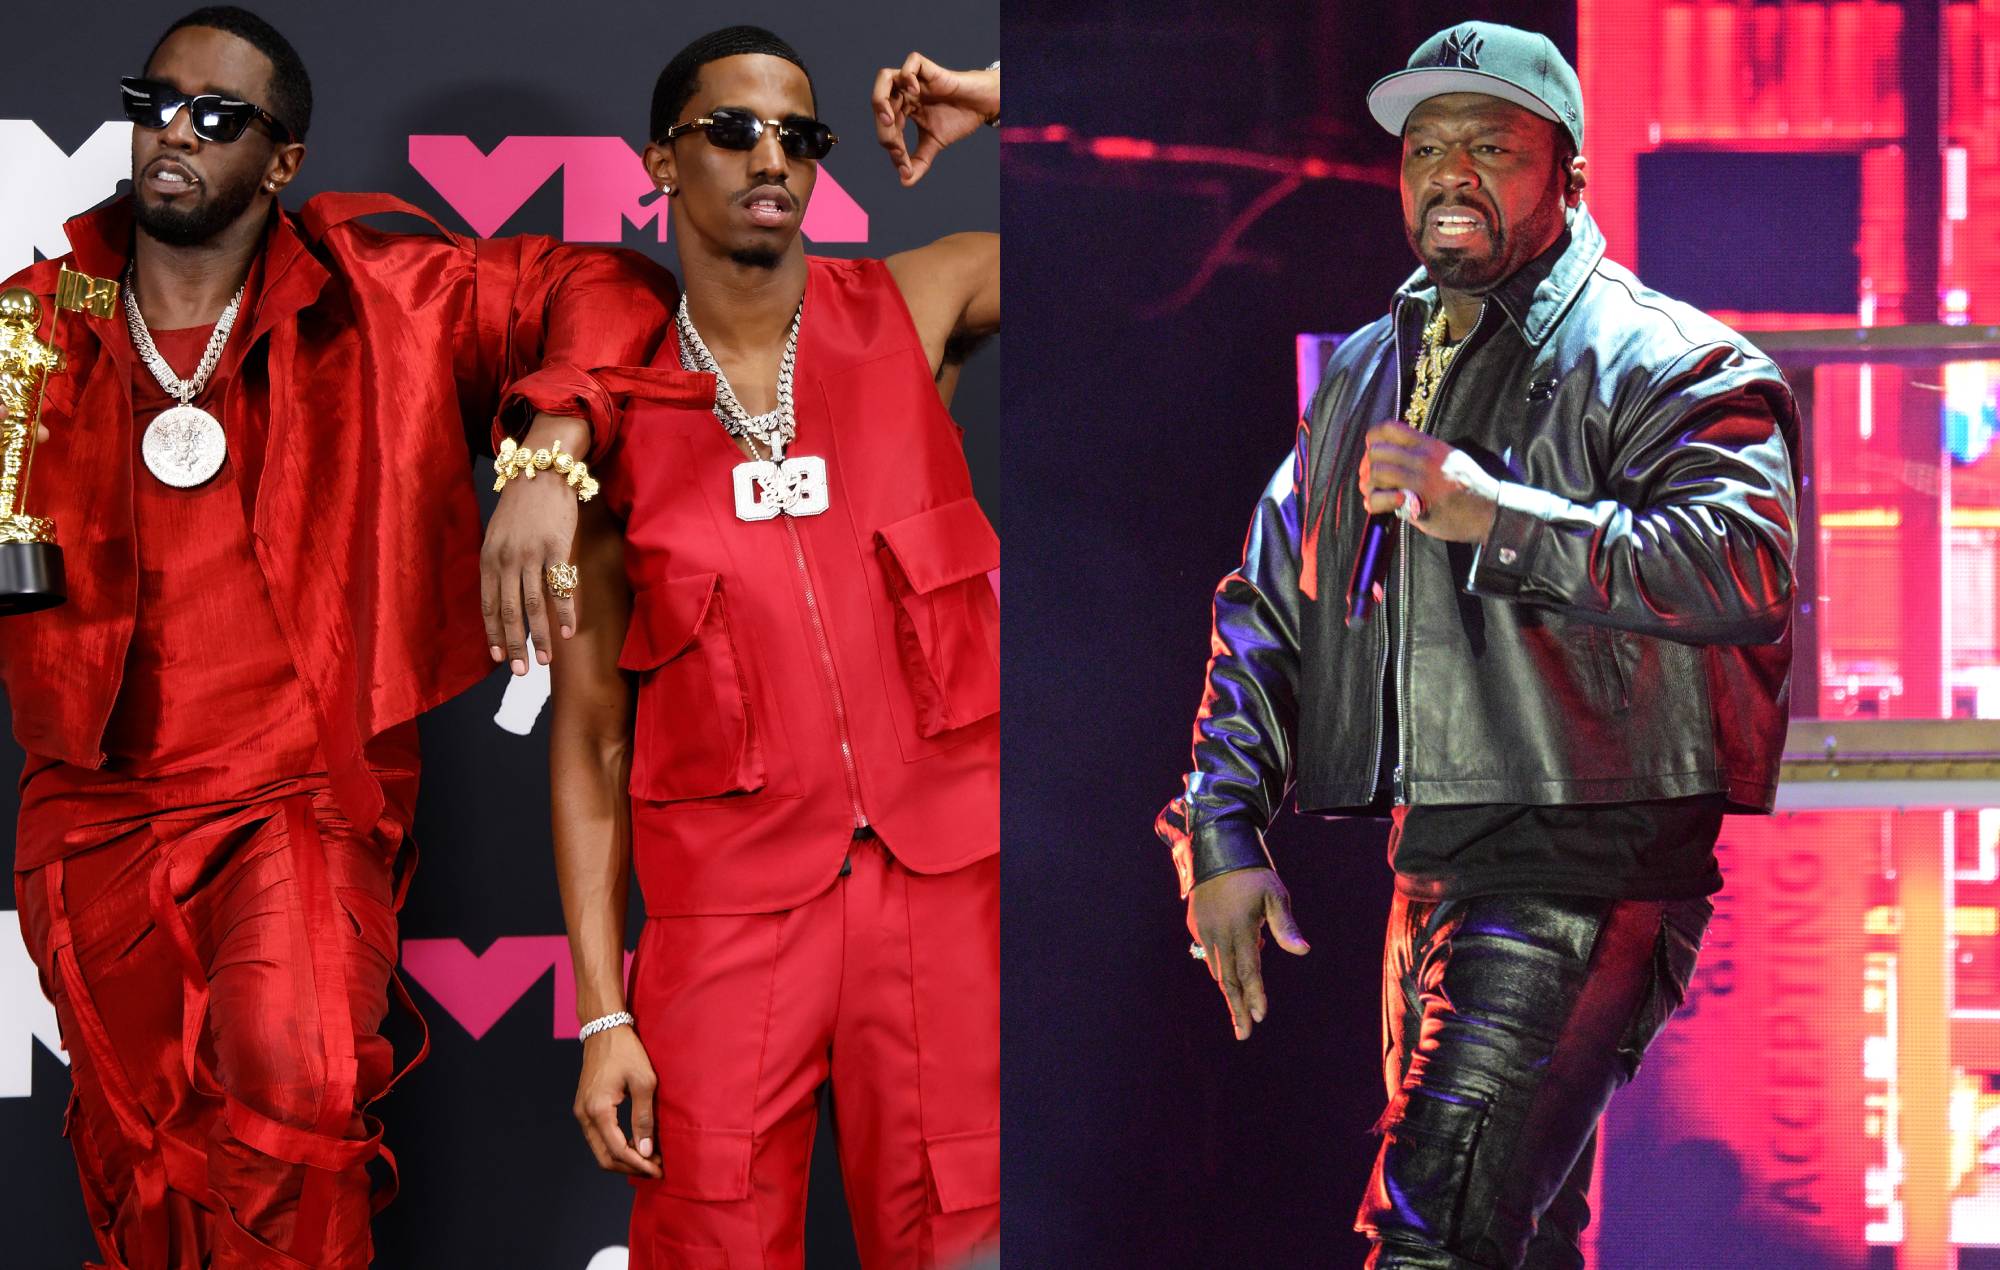 King Combs, hijo de Diddy, lanza un tema disidente en defensa de su padre, 50 Cent reacciona